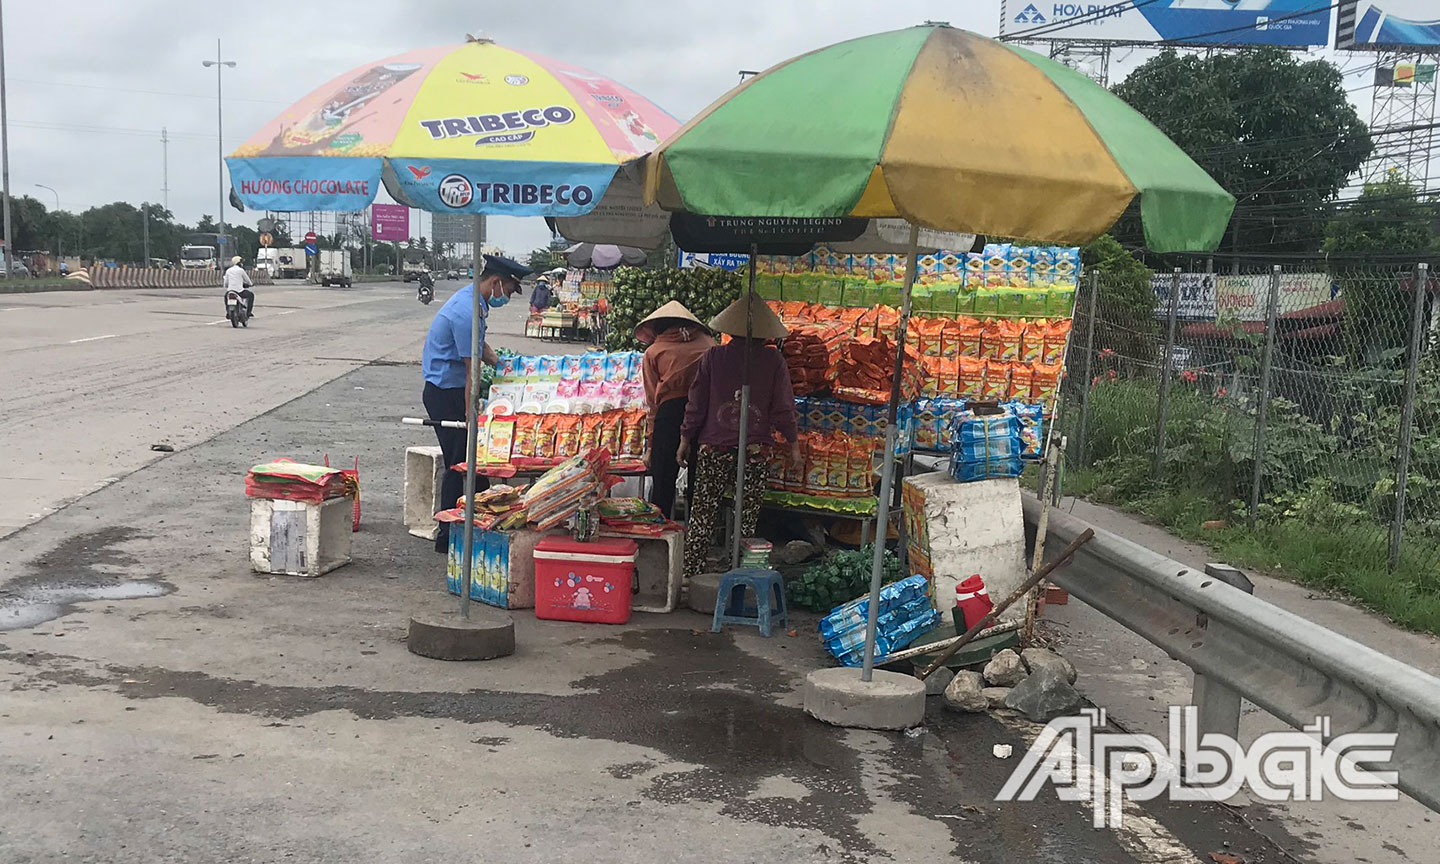 Đoàn liên ngành tuyên truyền, hỗ trợ dọn dẹp không cho buôn bán tại vị trí đường dẫn cầu Mỹ Thuận.